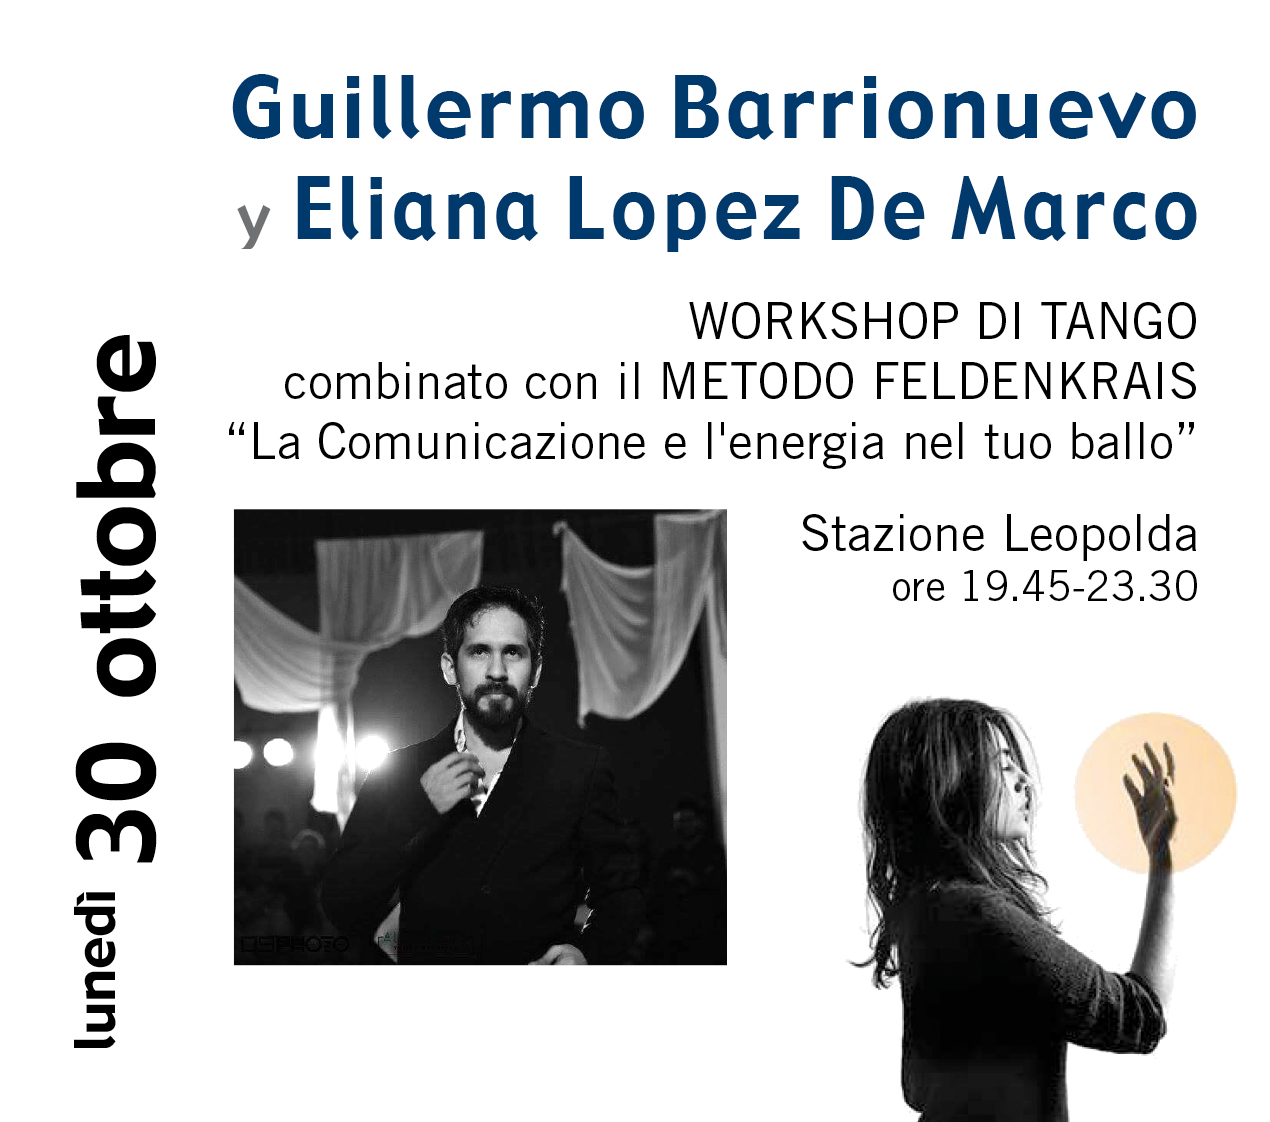 Workshop Guillermo Barrionuevo "El peque" y Eliana Lopez De Marco